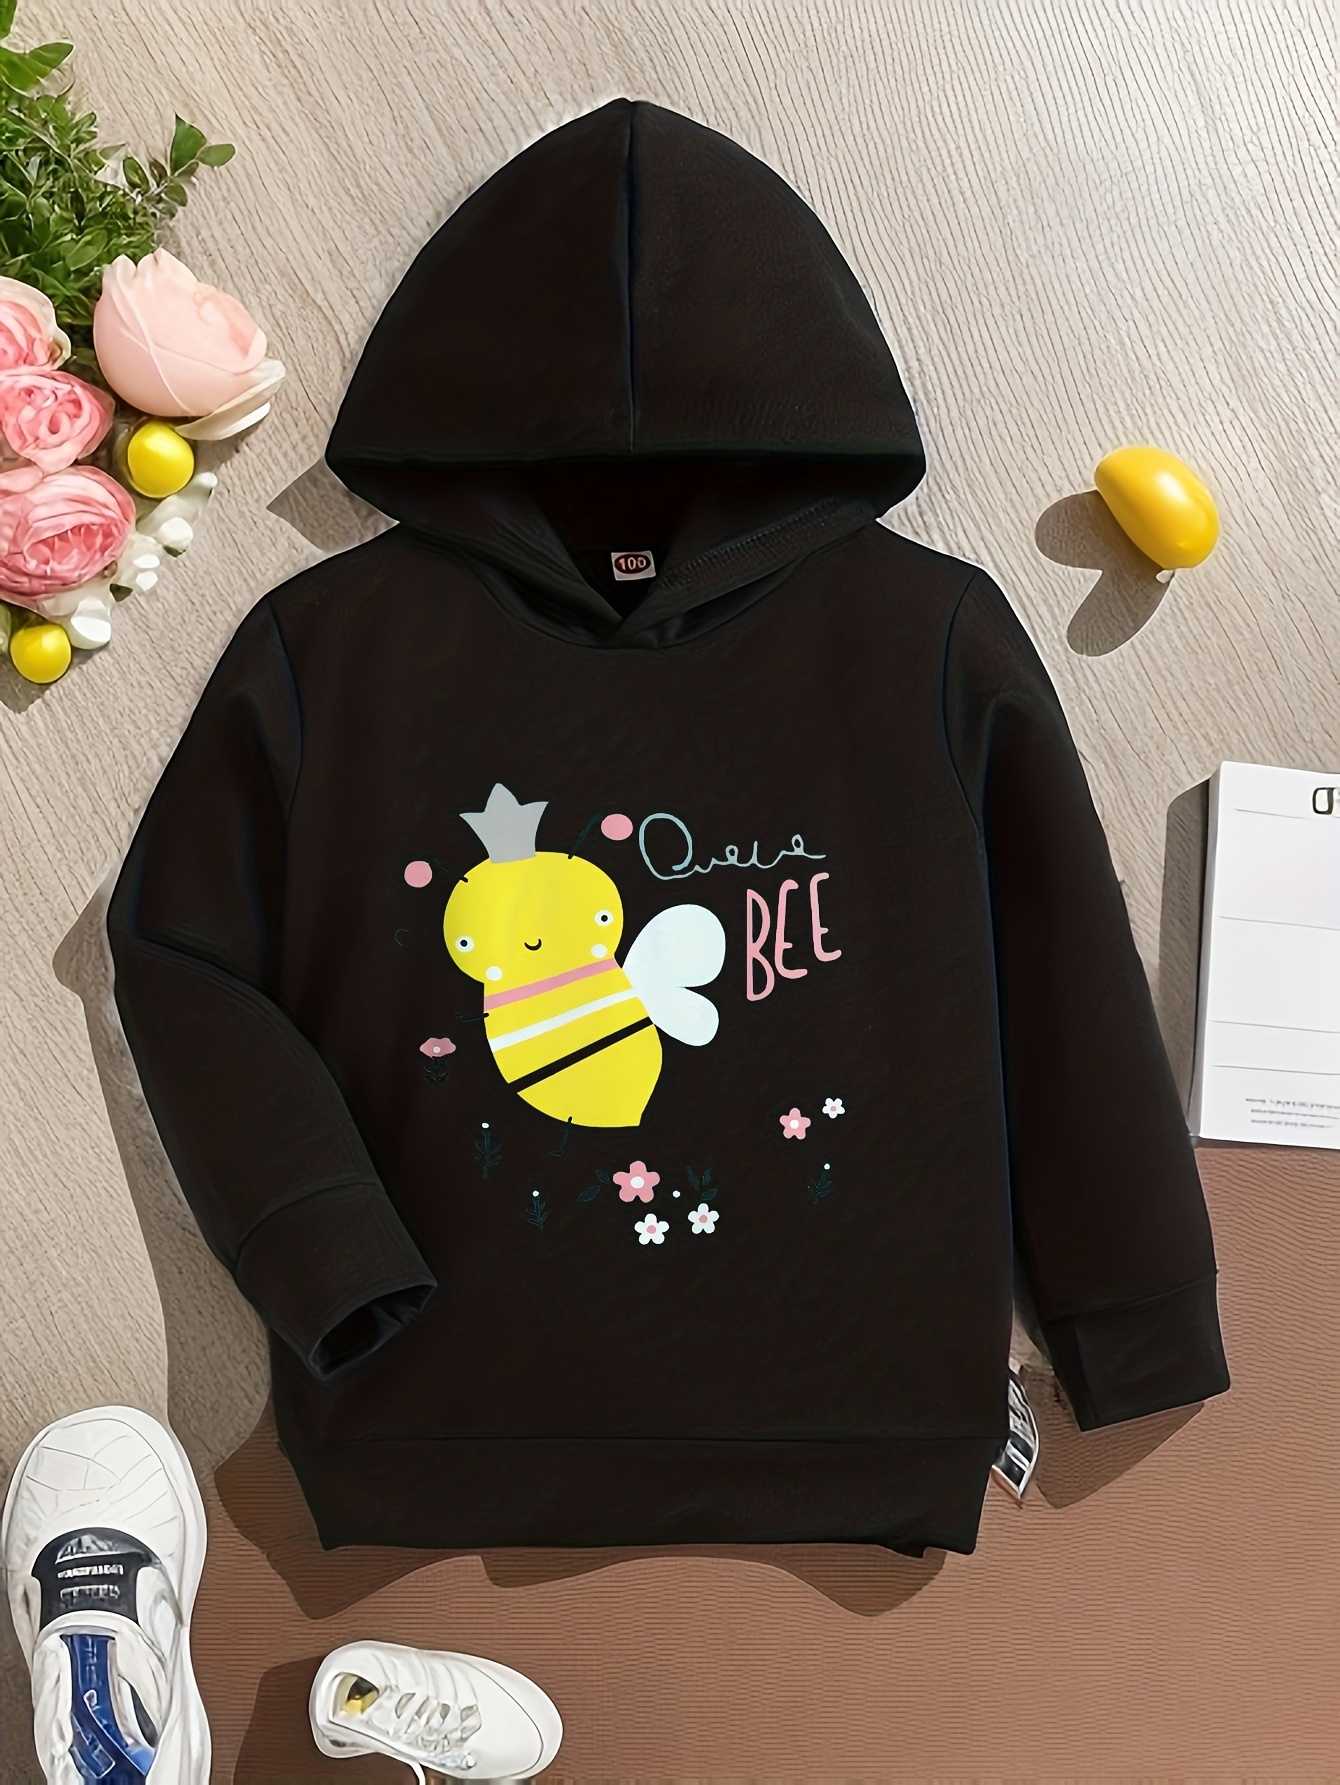 Cute Bee Print Hoodies For Girls, Graphic Hoodie, Comfy Loose